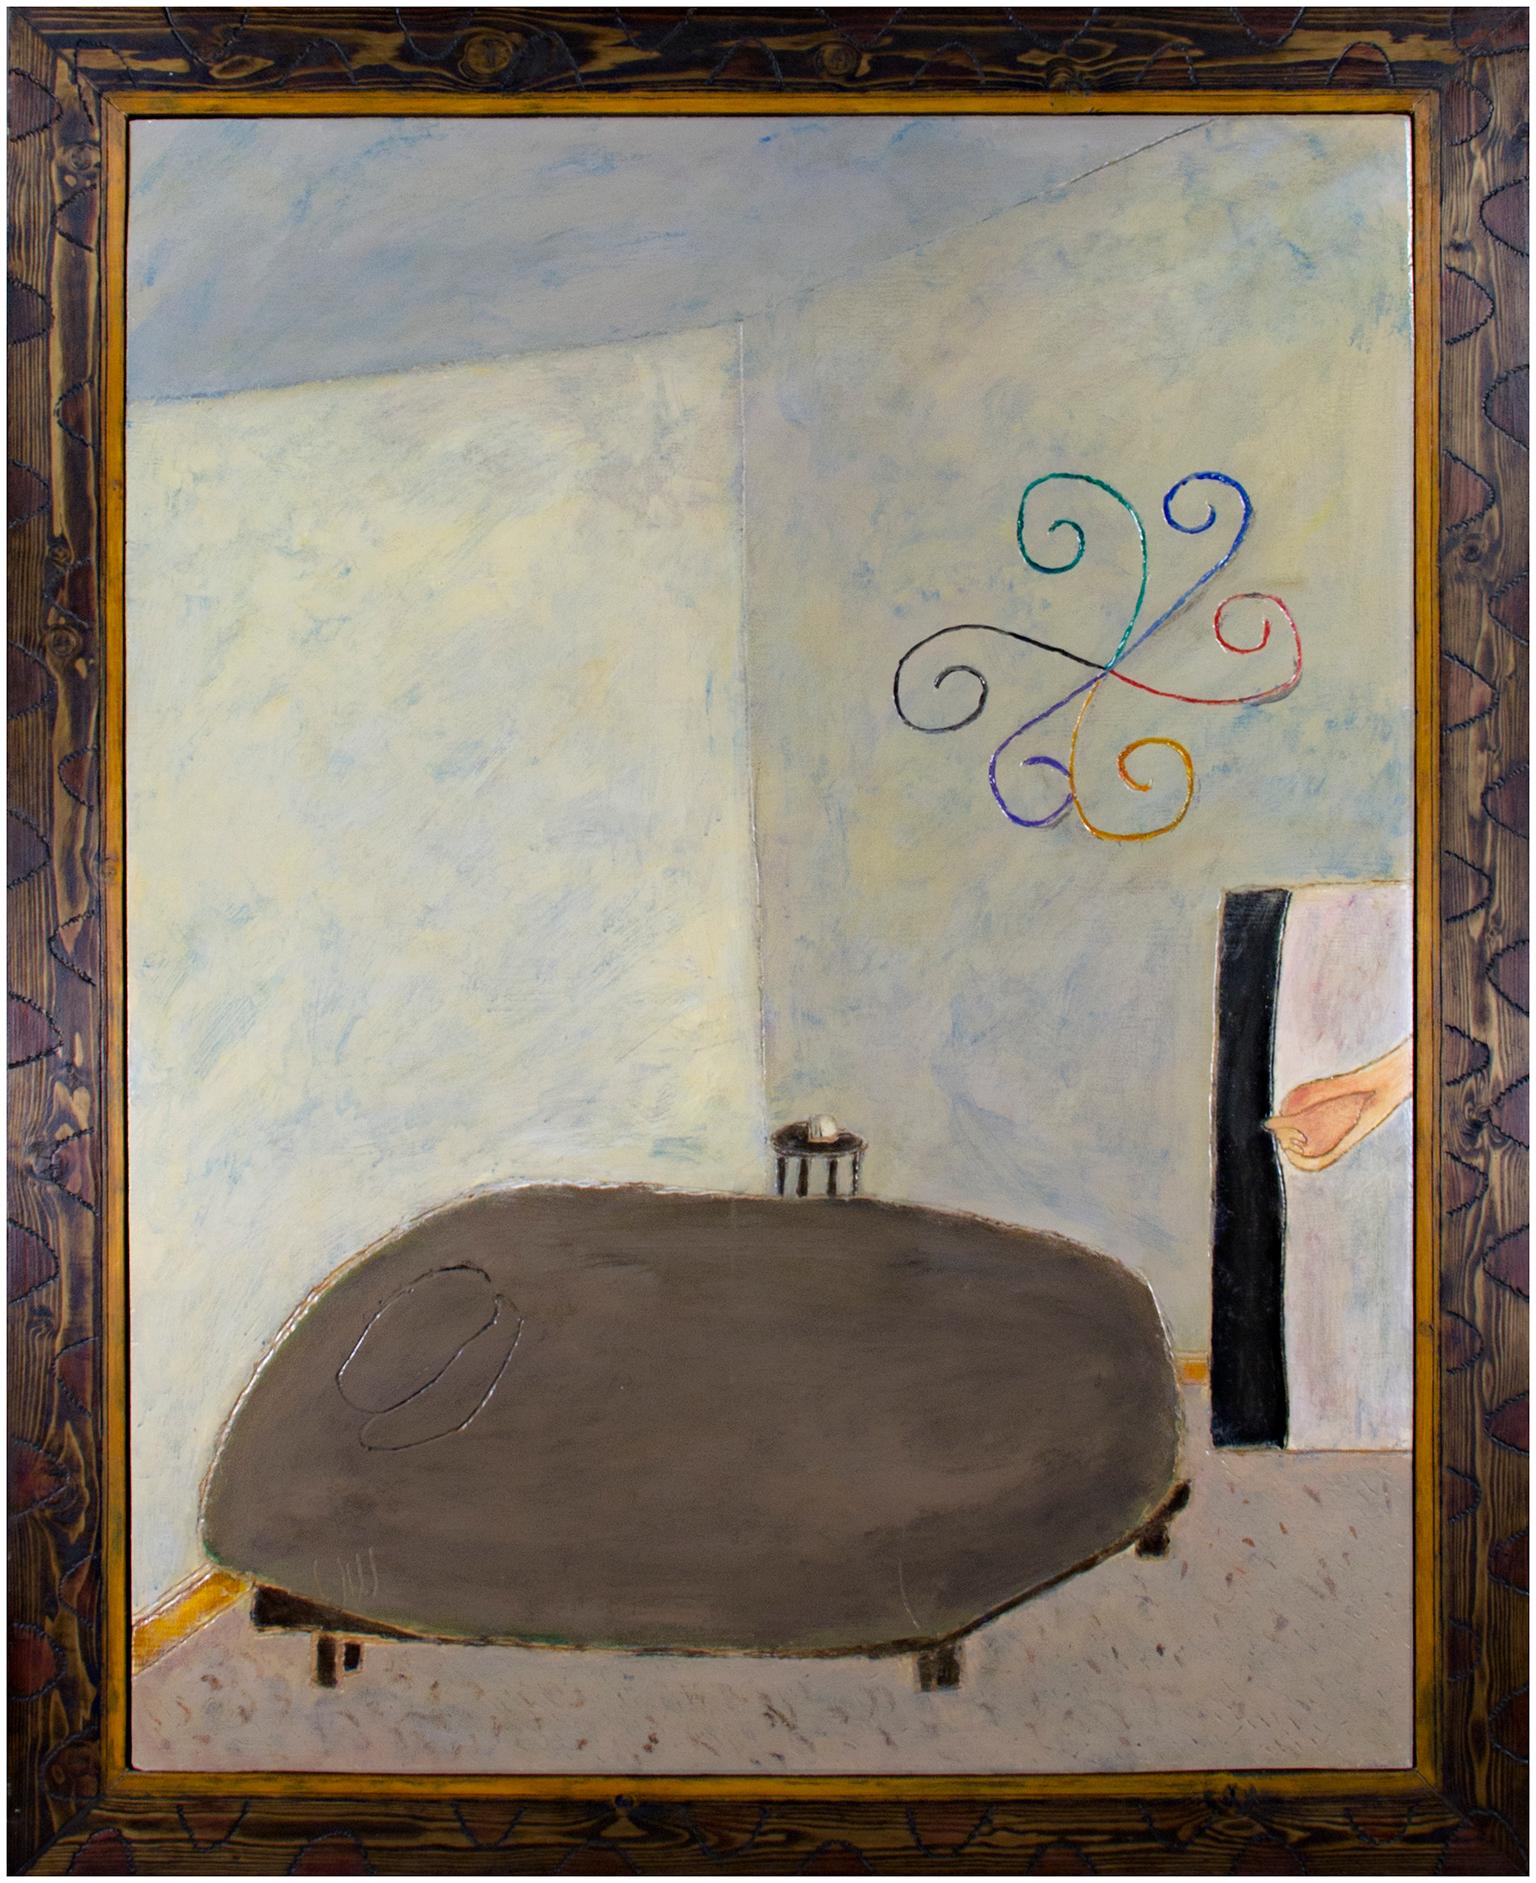 "Bedroom" de Robert Richter est une peinture à l'huile sur bois avec la signature au verso. Le cadre a été fabriqué par l'artiste et sculpté à la main, ce qui en fait une partie intégrante de l'œuvre. Peut-être en hommage à Van Gogh, cette